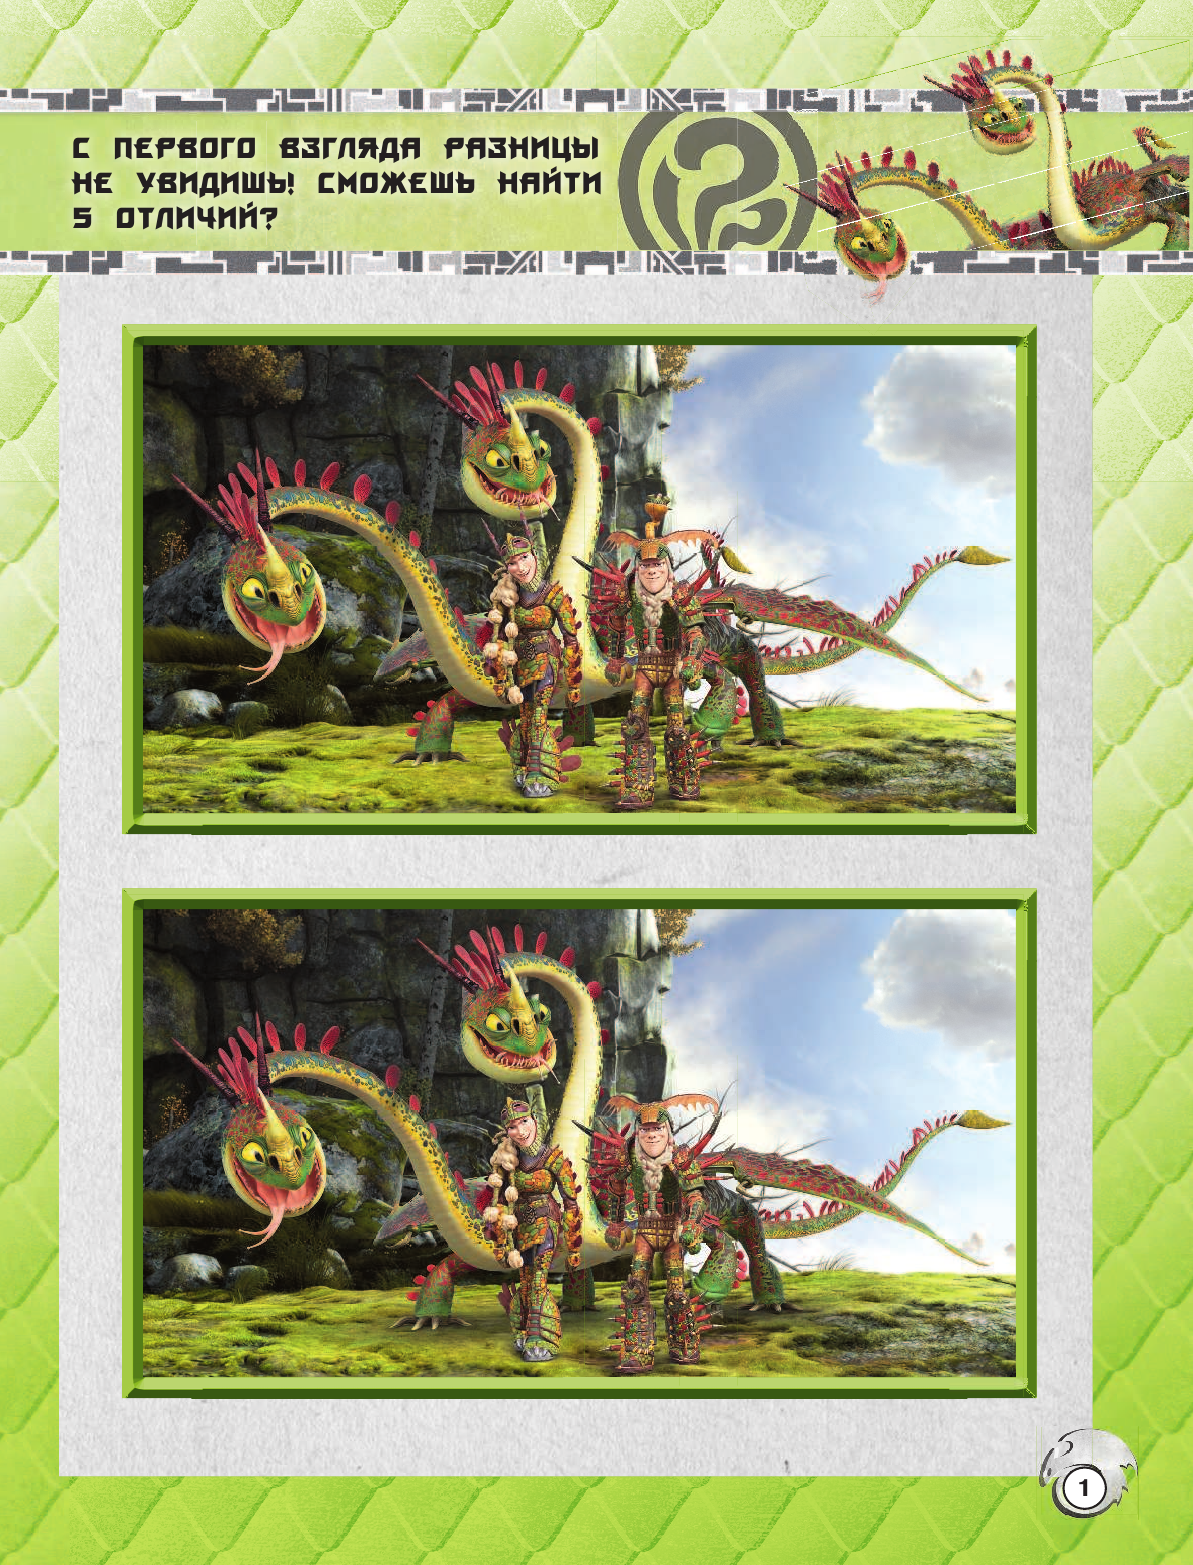  Как приручить дракона 3. Друзья навек (с наклейками) - страница 2